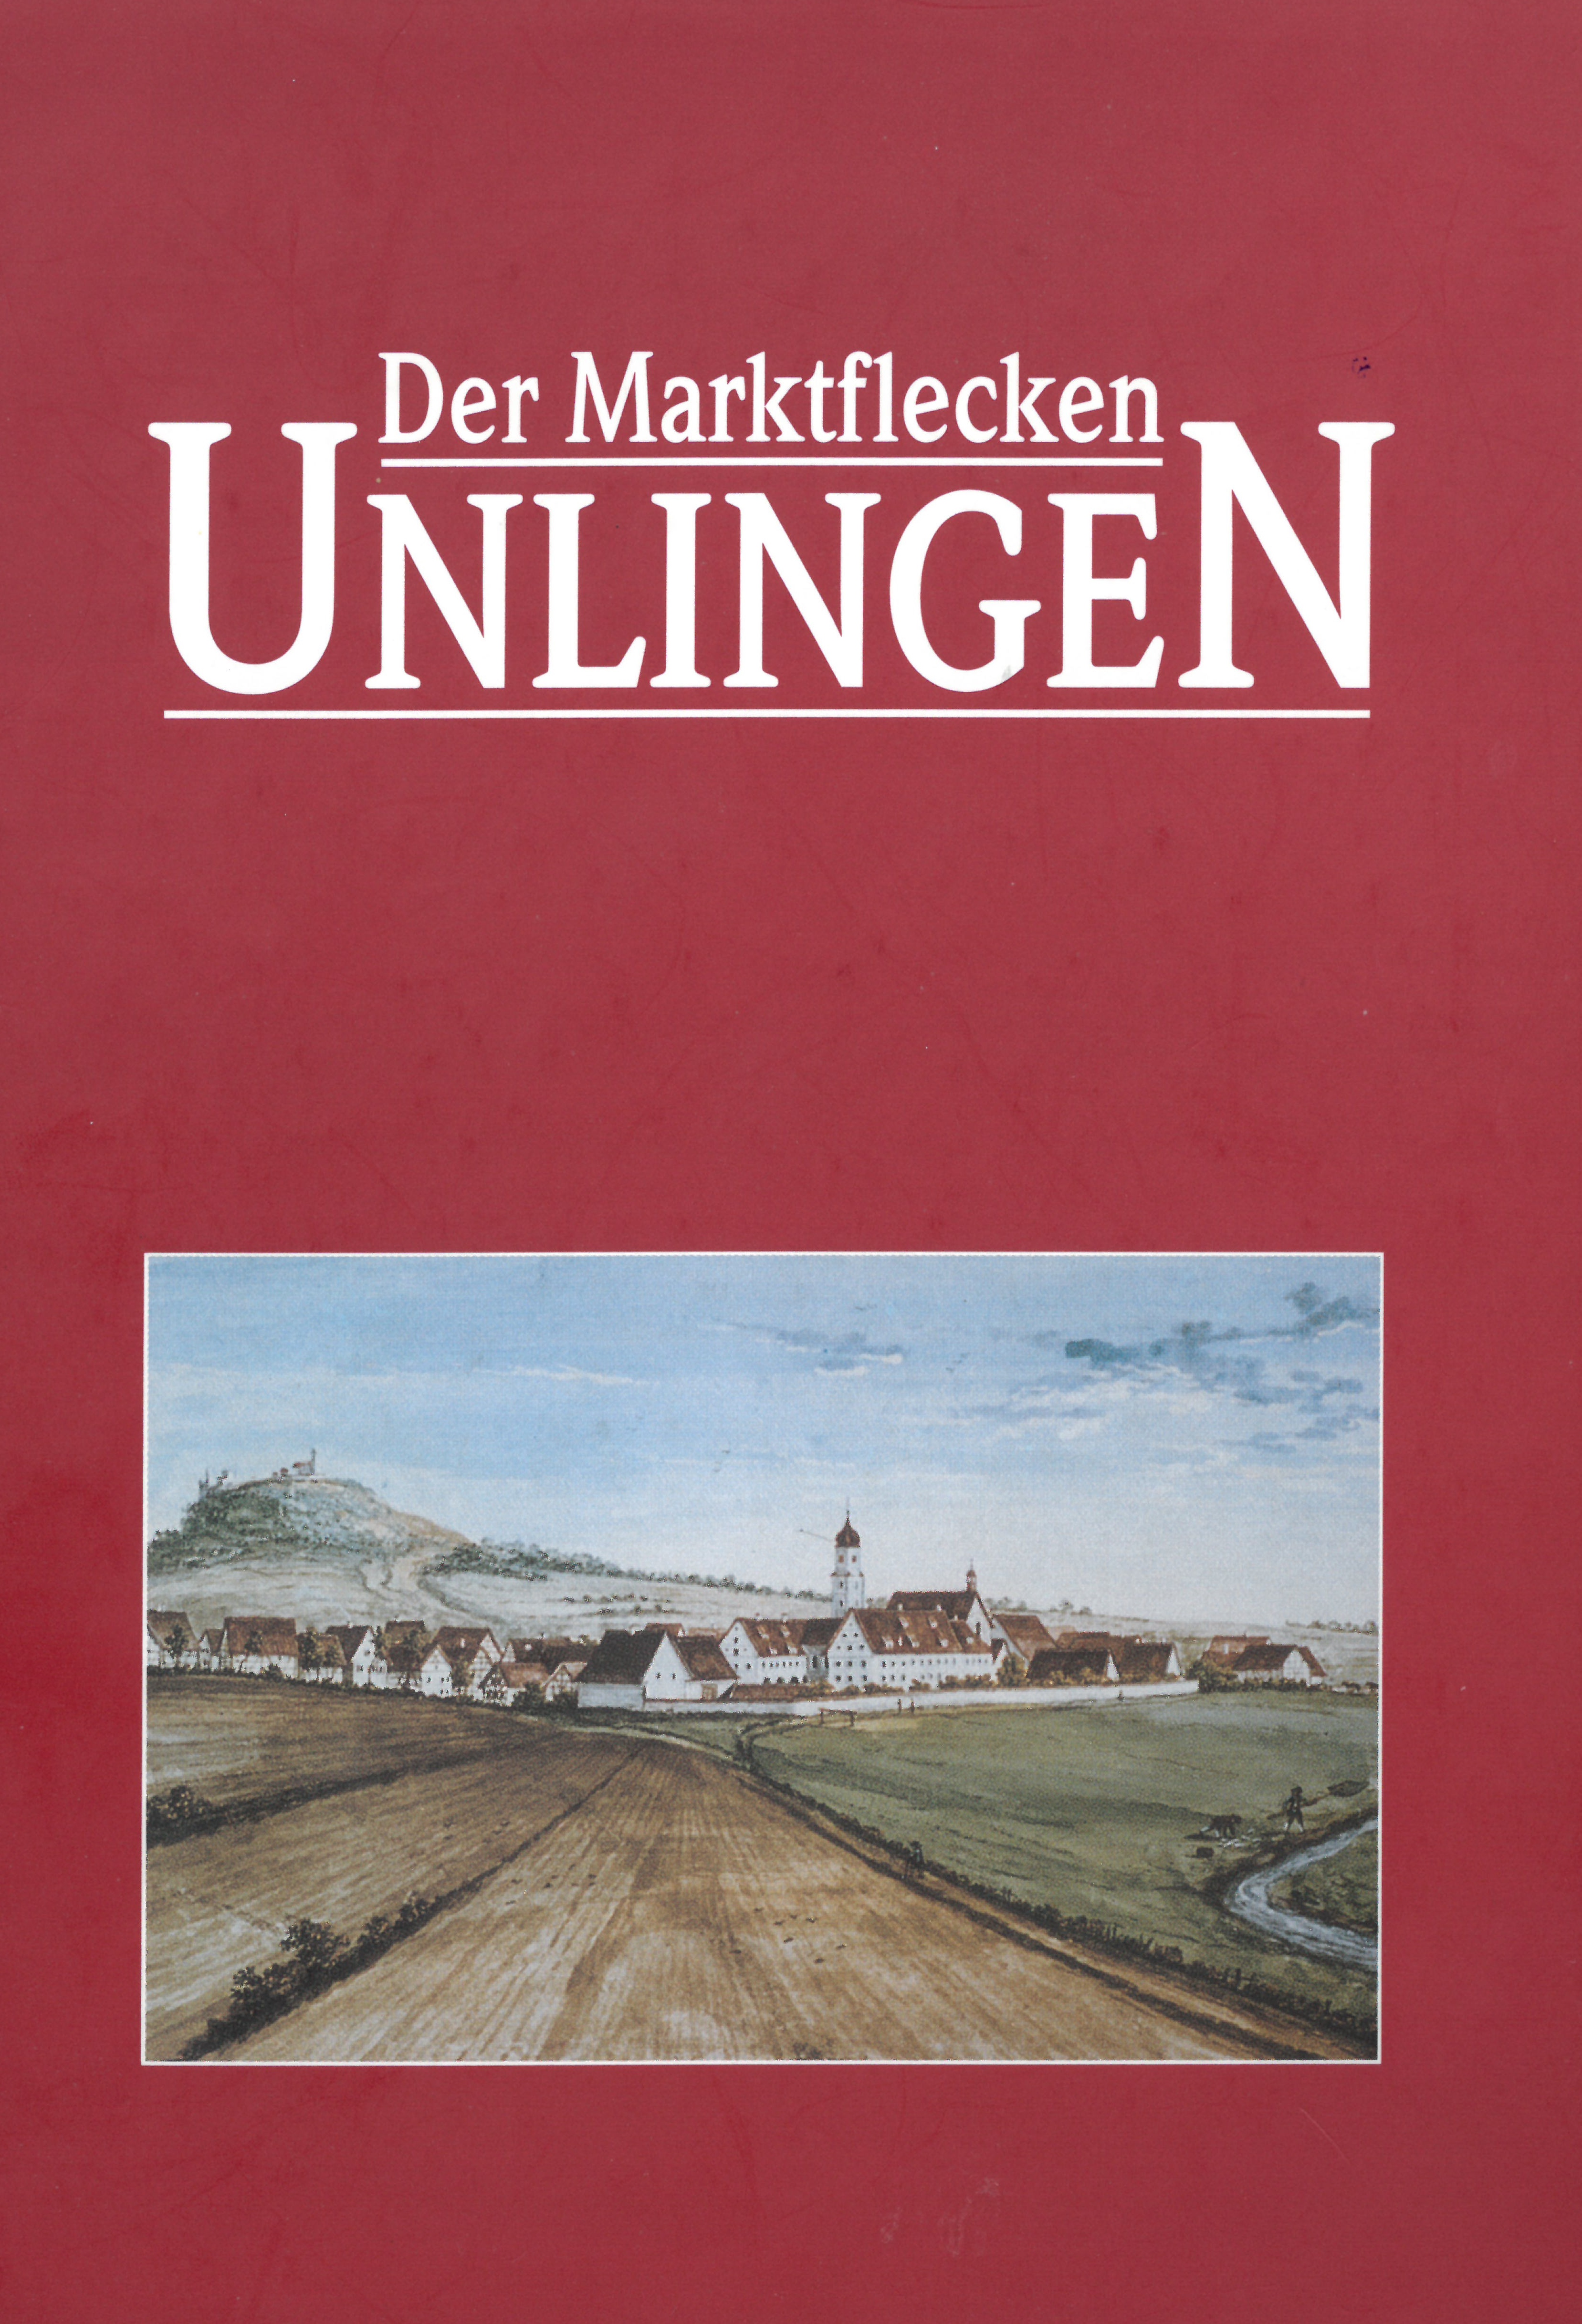  Heimatbuch - Autor Theodor Selig 